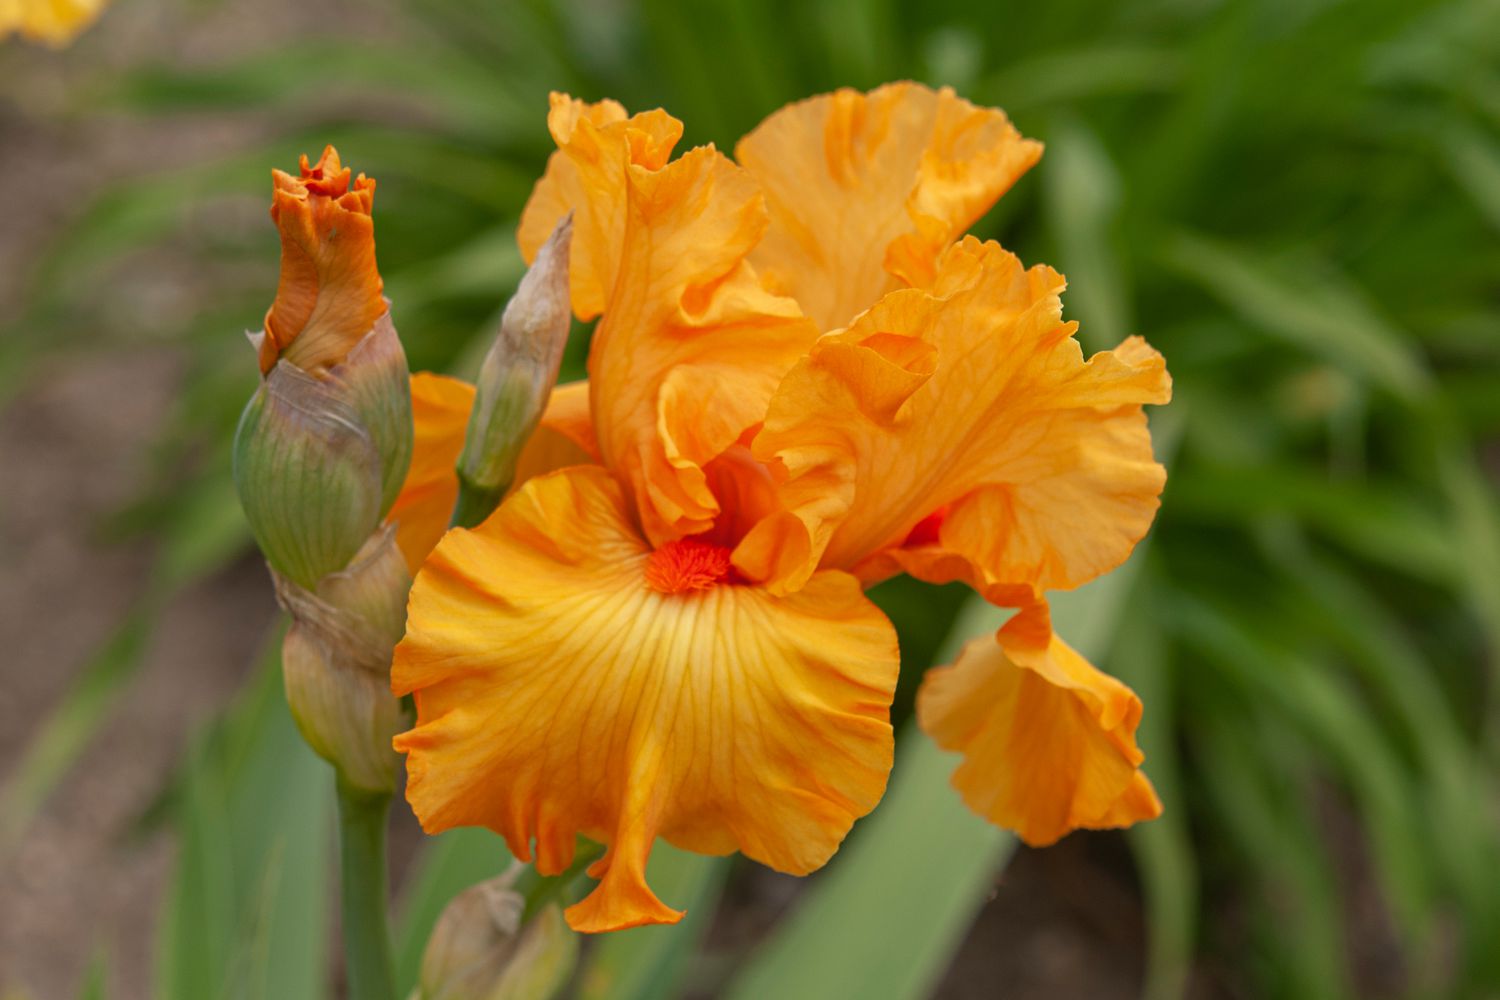 Iris-Pflanze mit hellorangen gekräuselten Blütenblättern und Knospe in Nahaufnahme